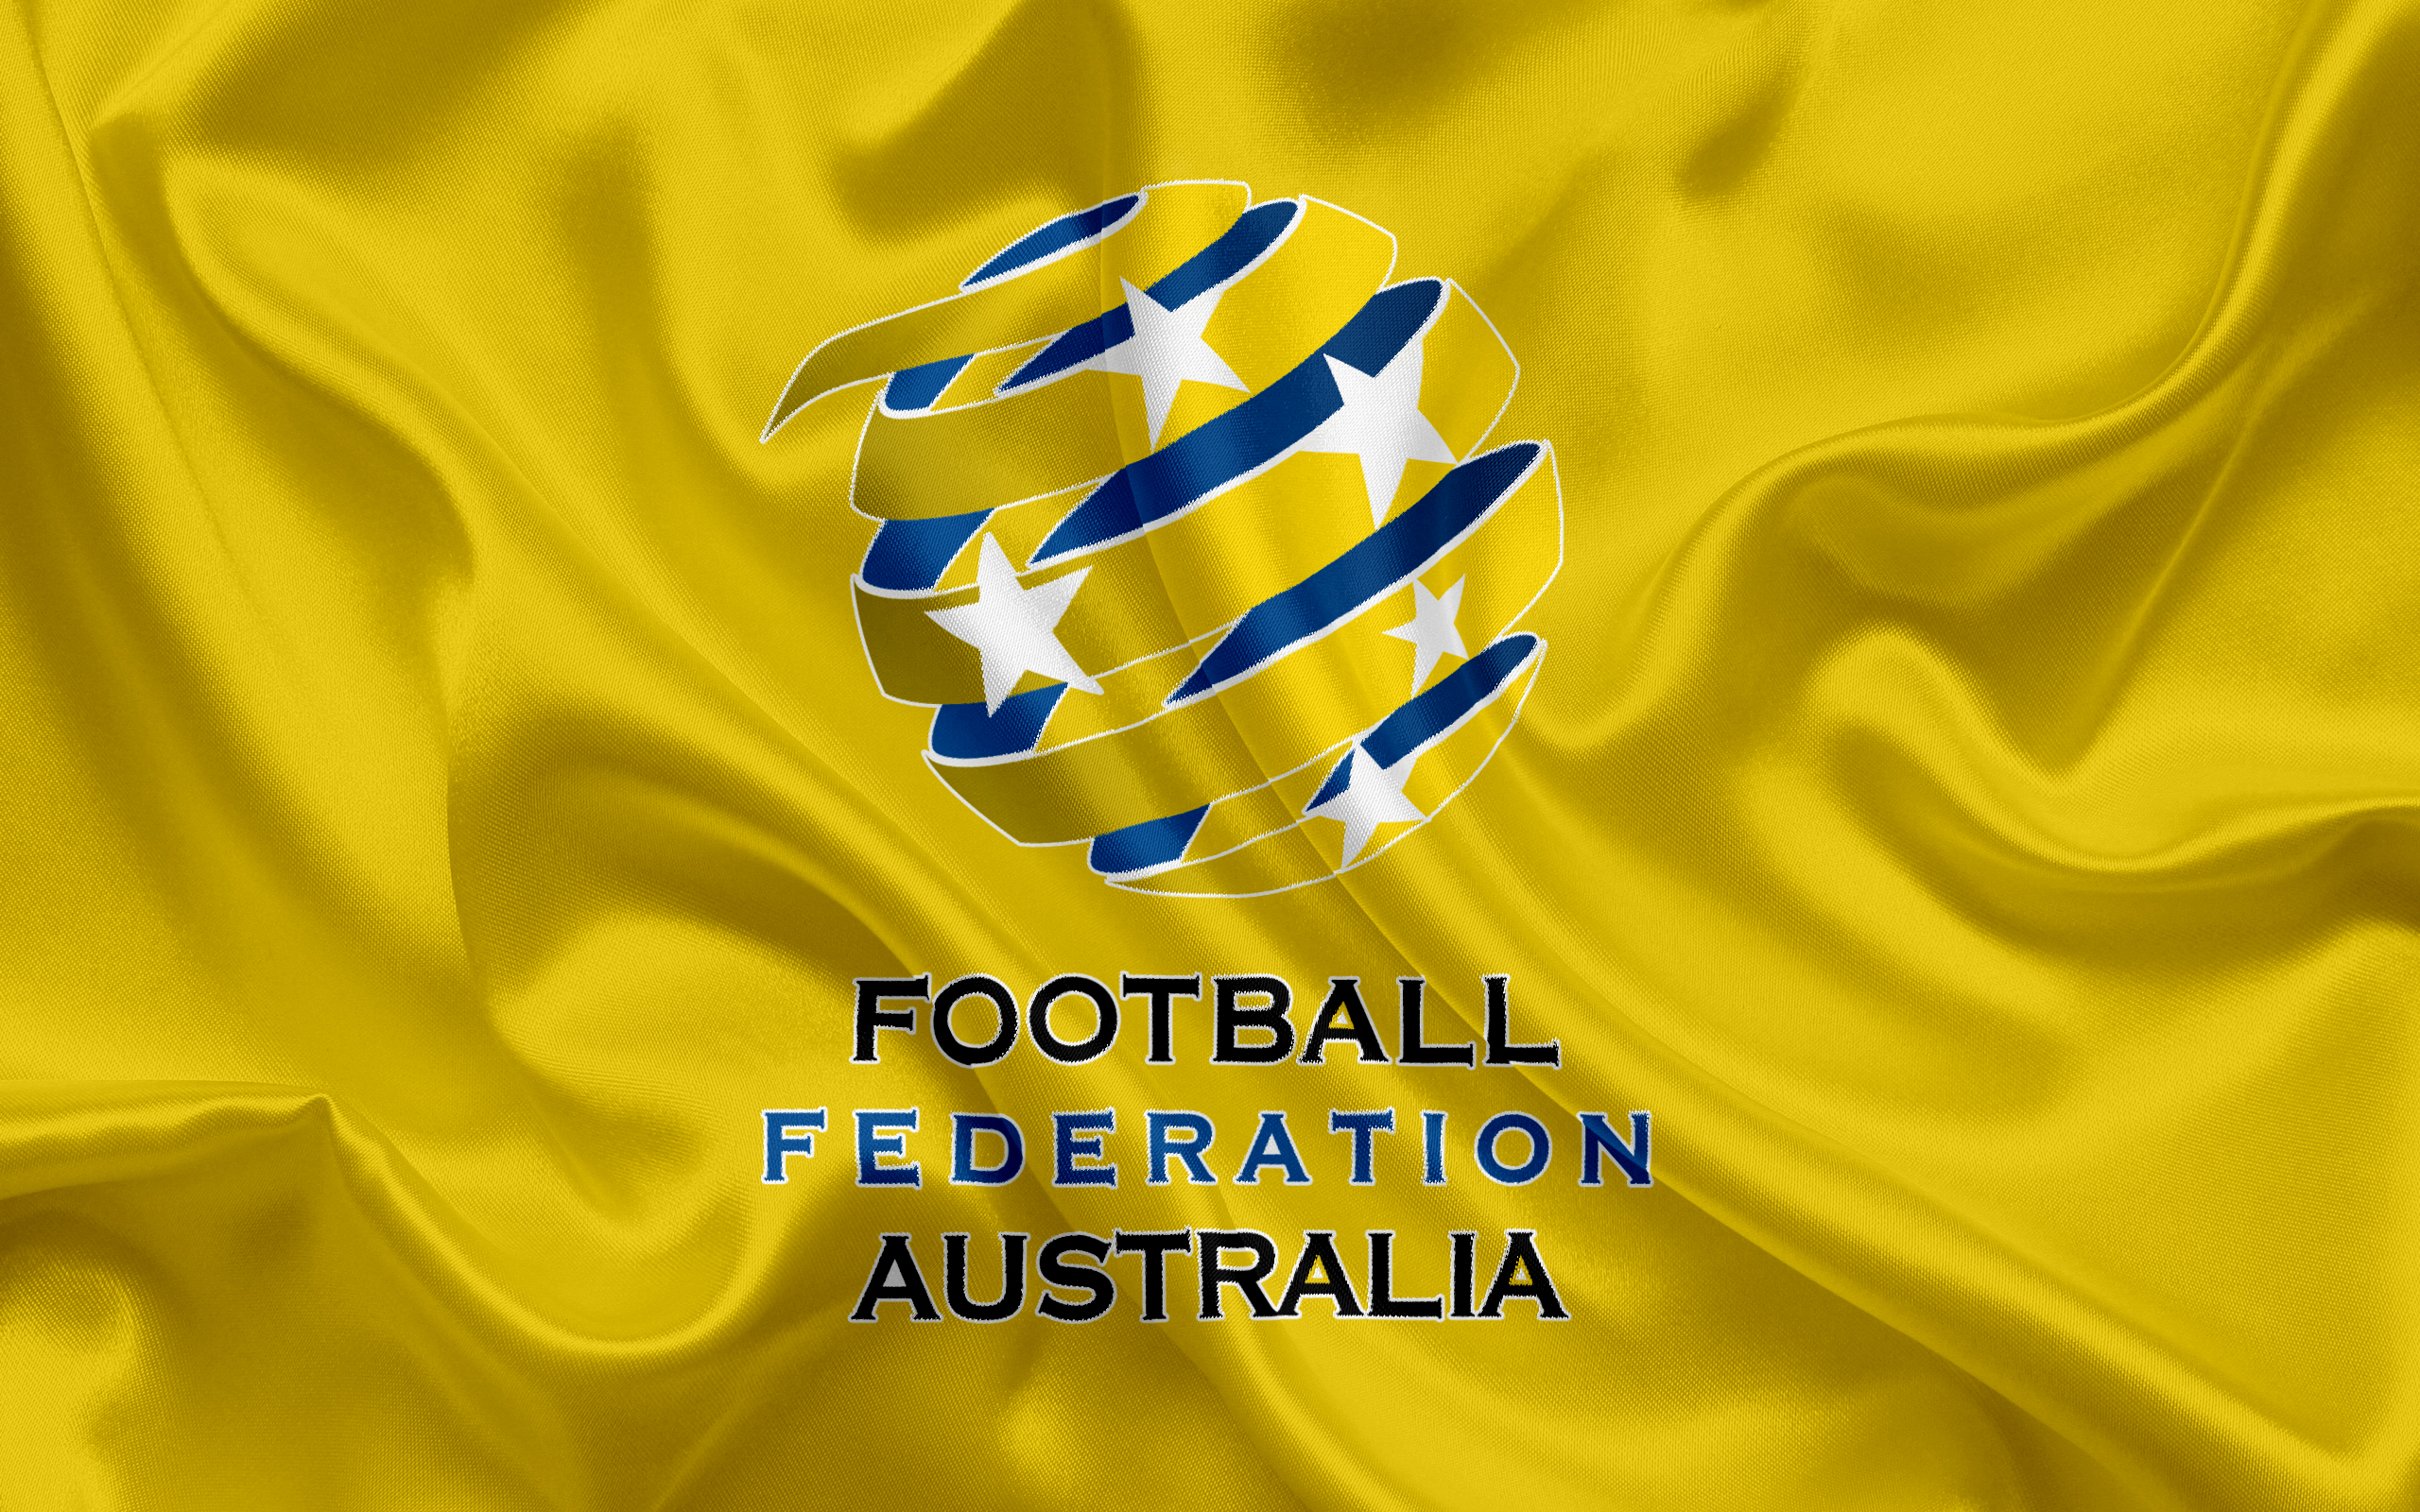 Скачать обои Сборная Австралии По Футболу на телефон бесплатно